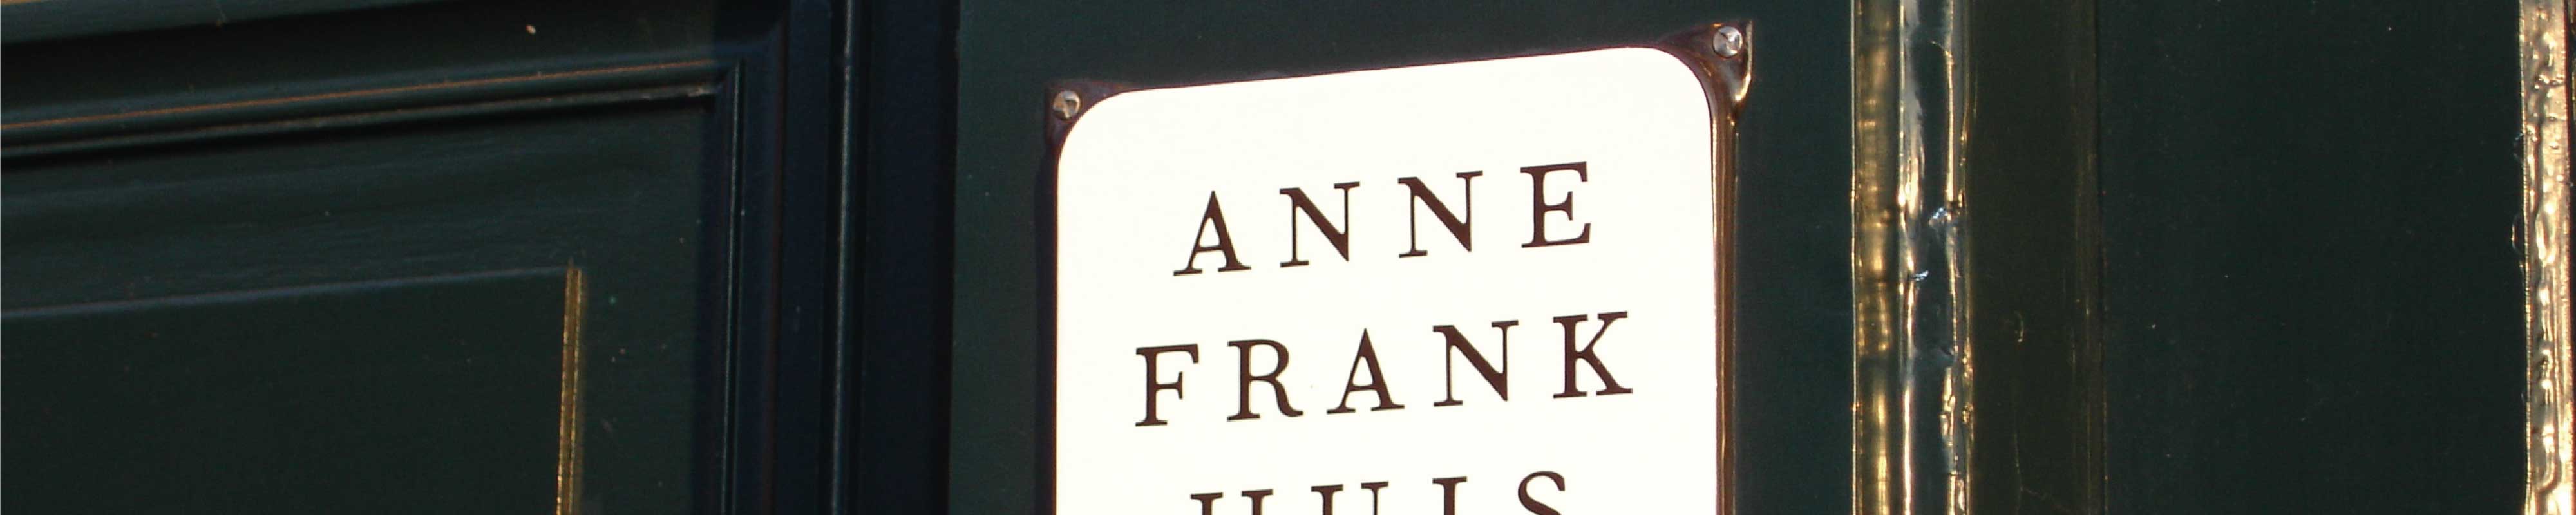 Consigna Equipaje | Casa de Ana Frank en Amsterdam - Nannybag